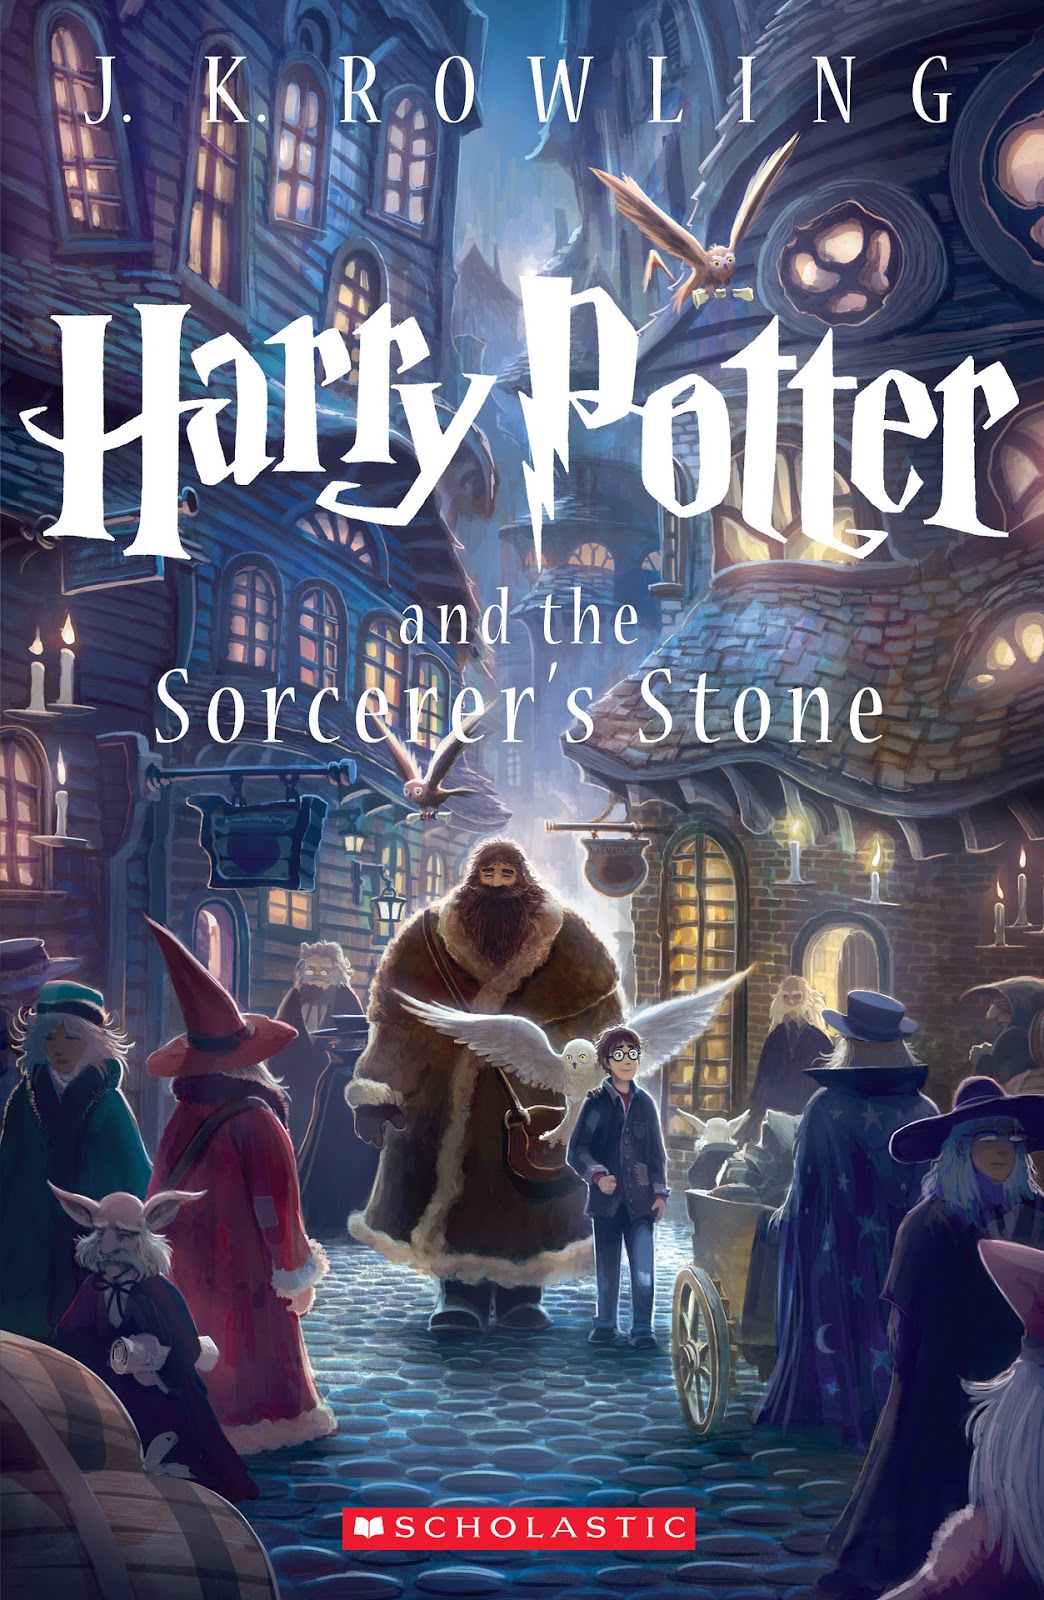 Mundo Dandan: Las 7 nuevas portadas de Harry Potter